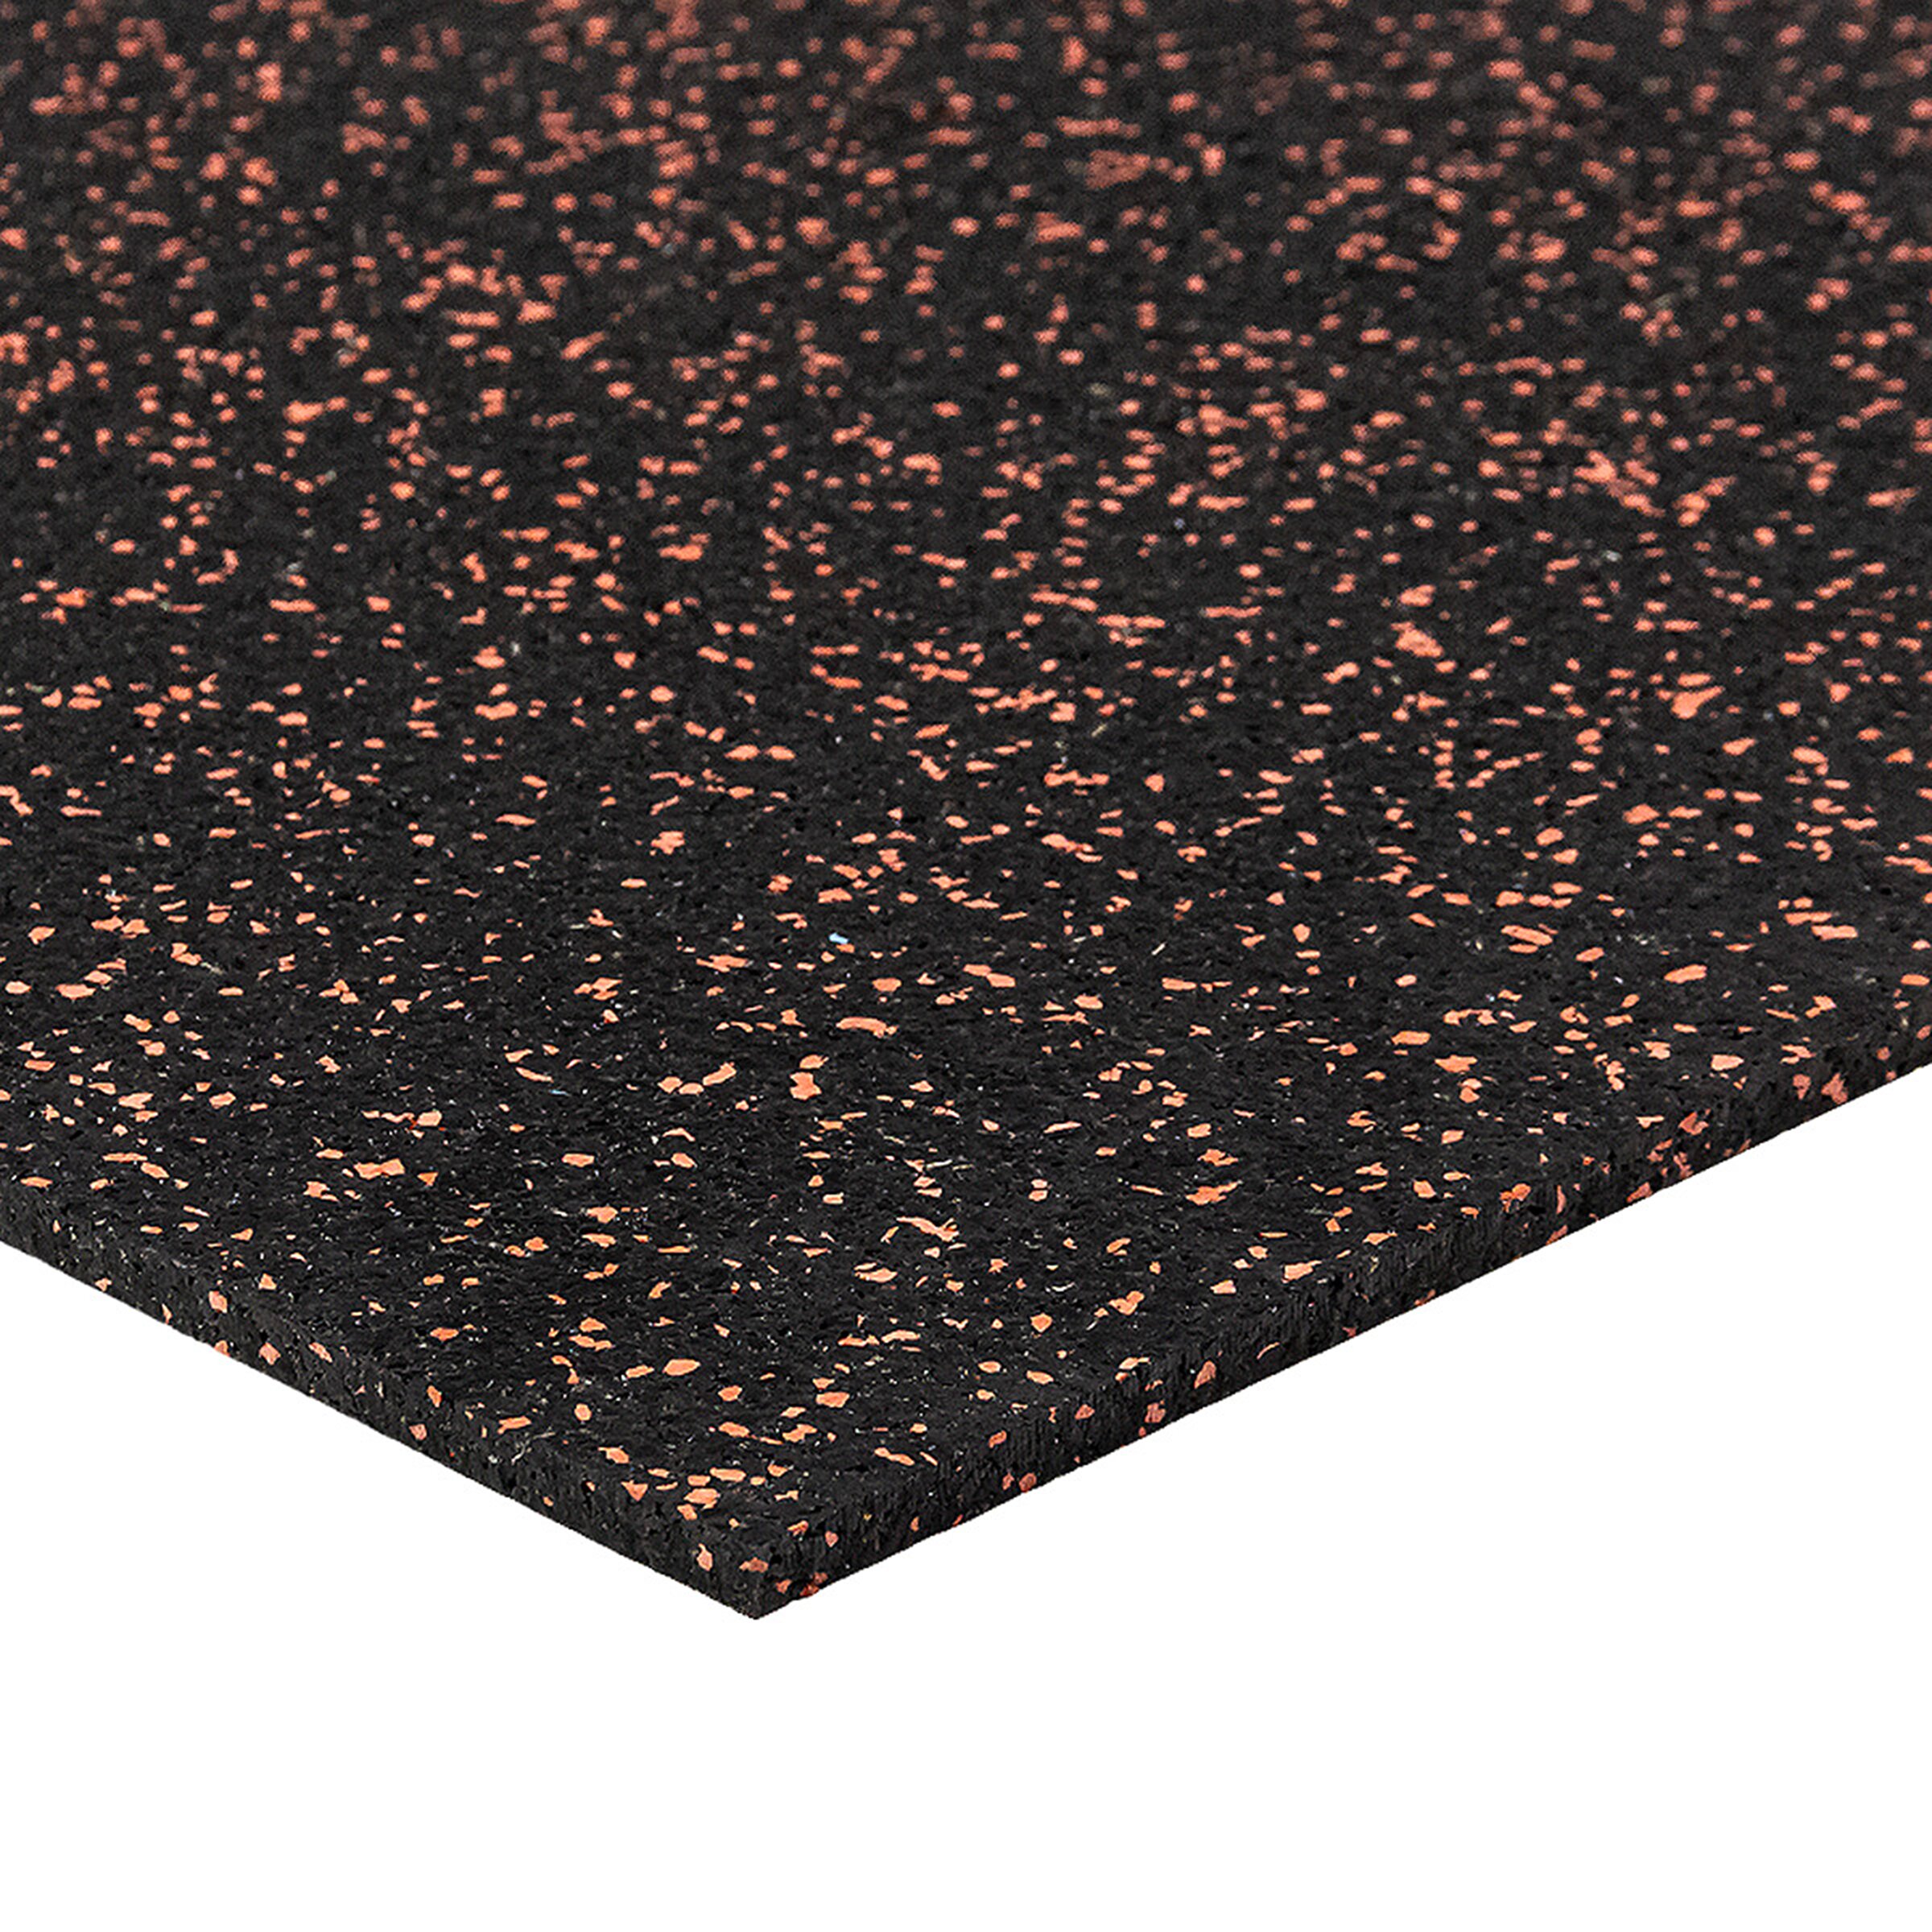 Černo-červená podlahová guma (puzzle - střed) FLOMA FitFlo SF1050 - délka 100 cm, šířka 100 cm, výška 0,8 cm